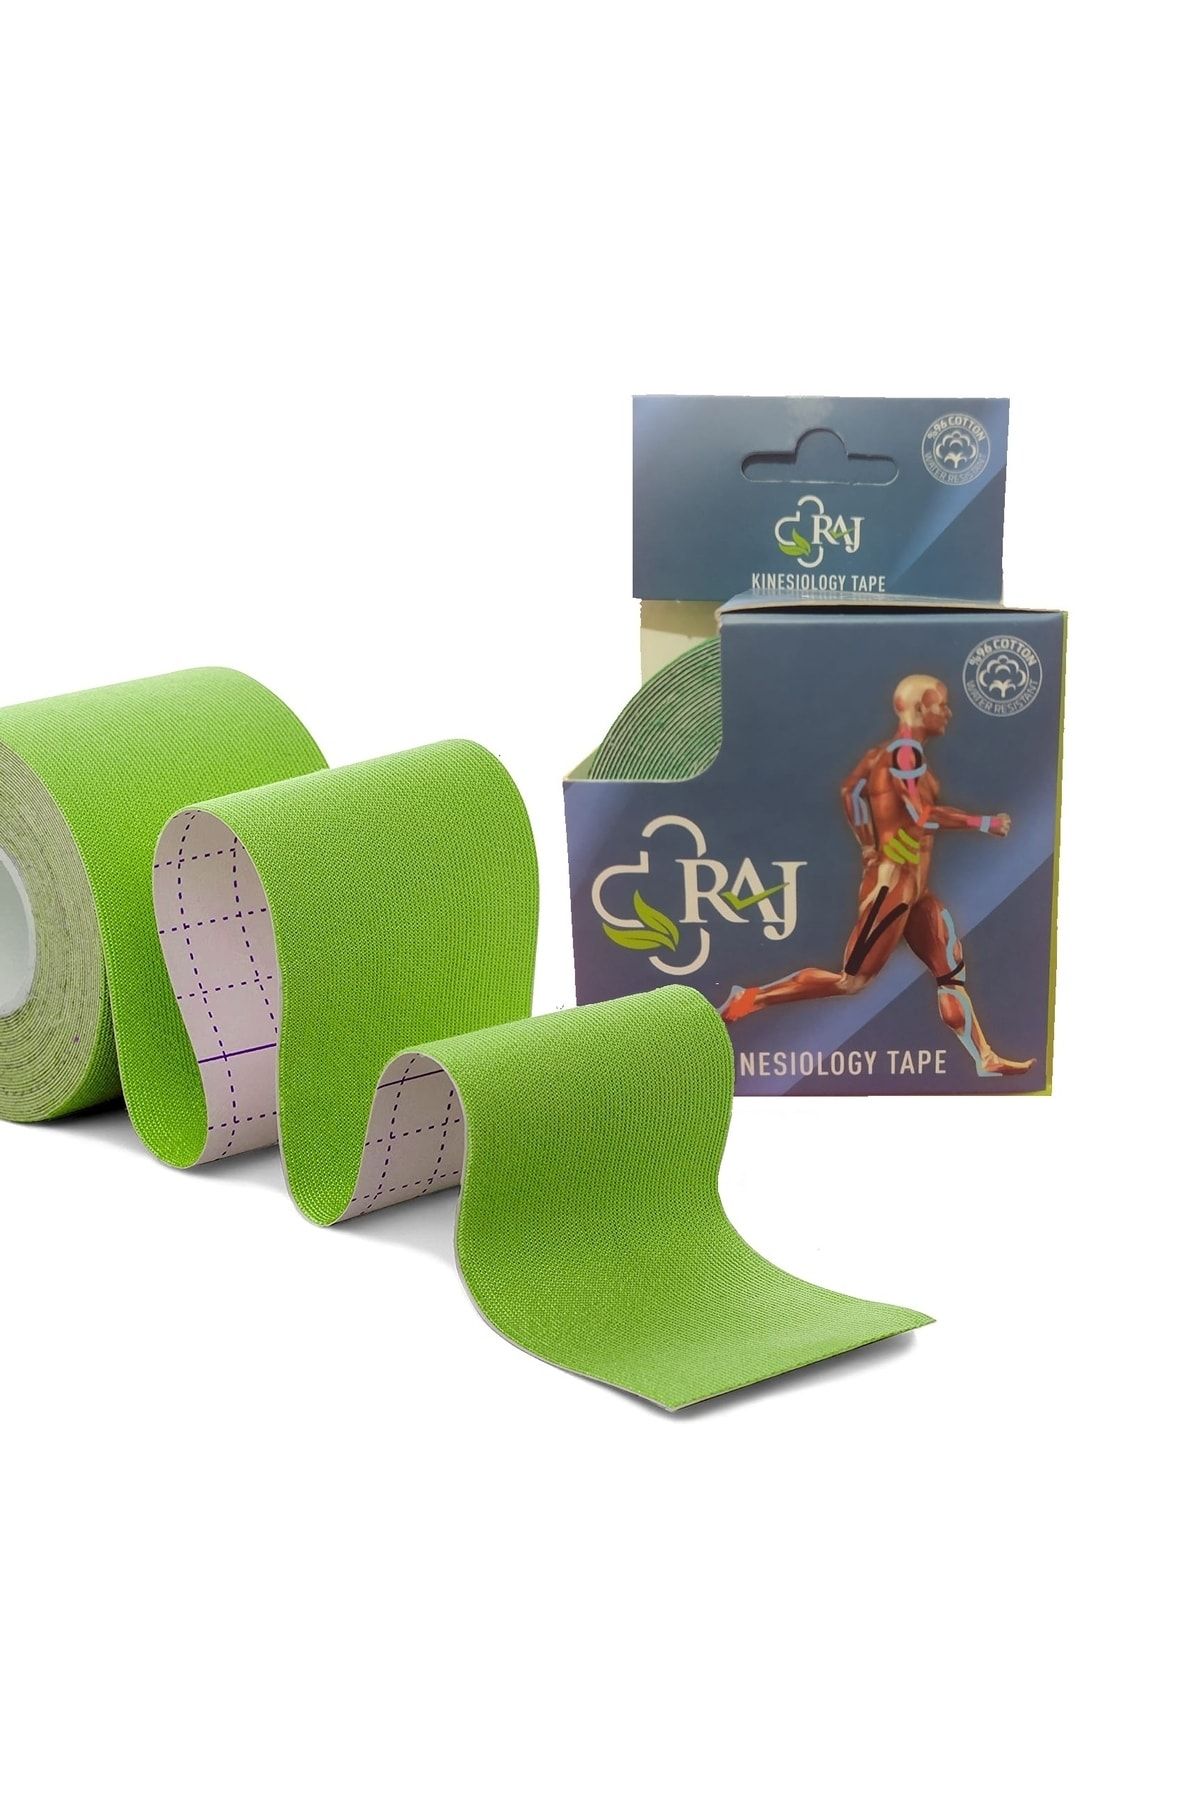 RAJ Yeşil Tape Kinesio Ağrı 5m X 5cm Sporcu Bandı Ağrı Bandı Kinesiology